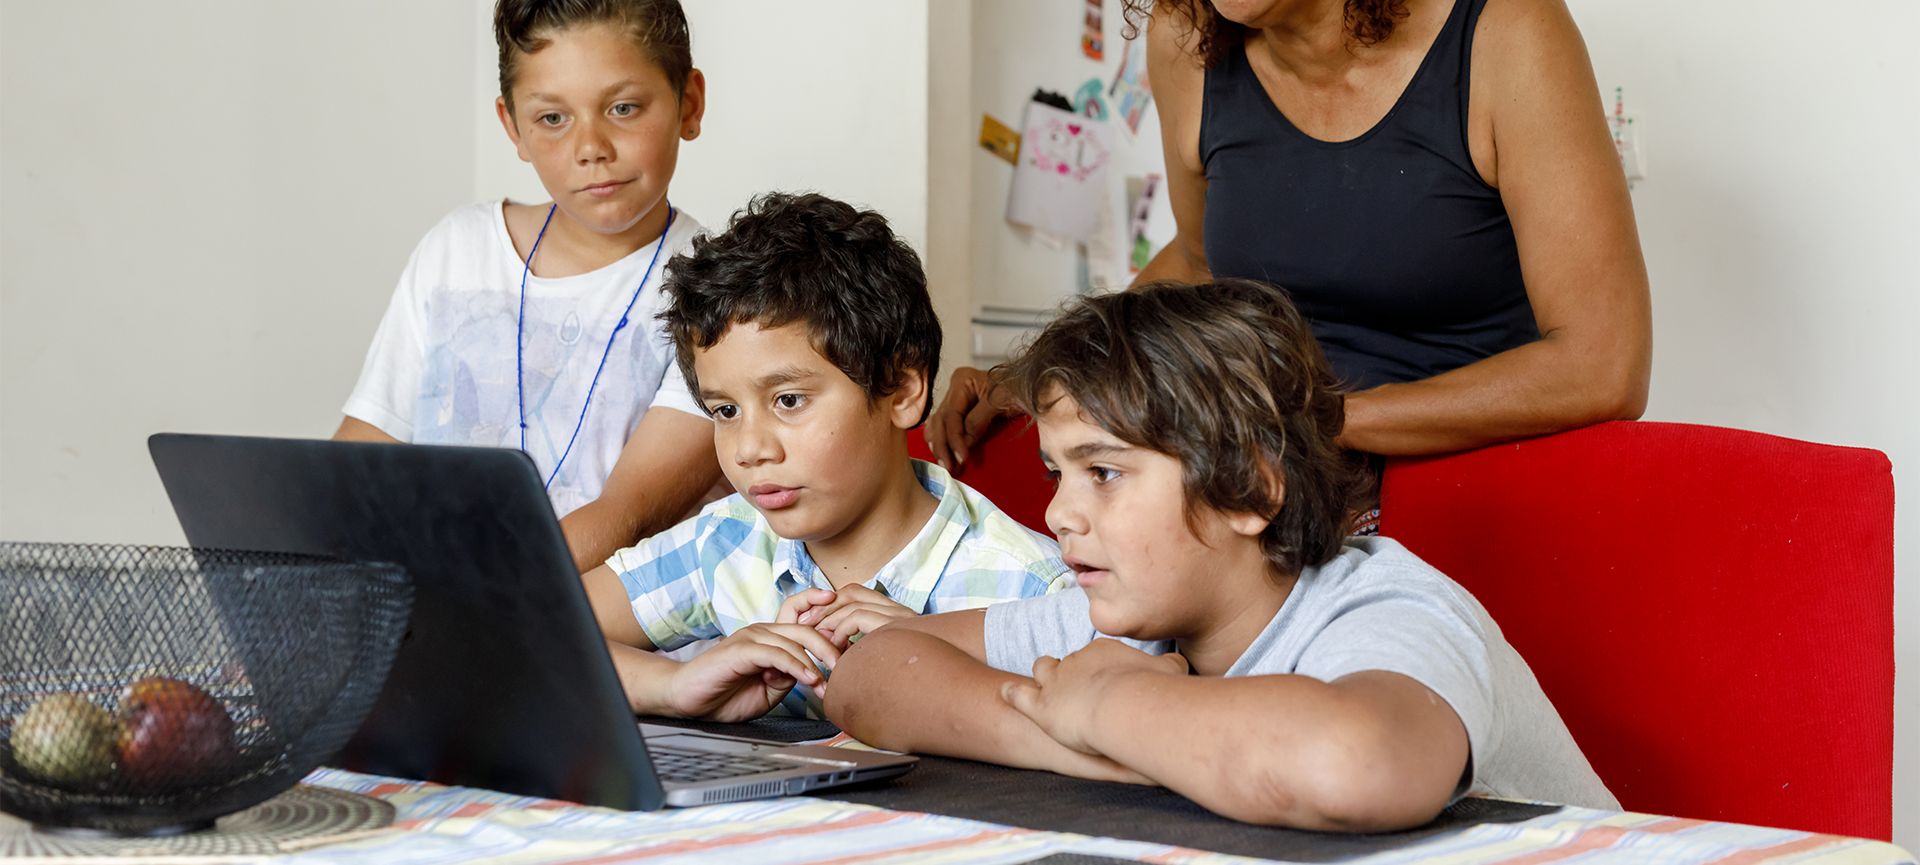 Aboriginal kids looking at laptop